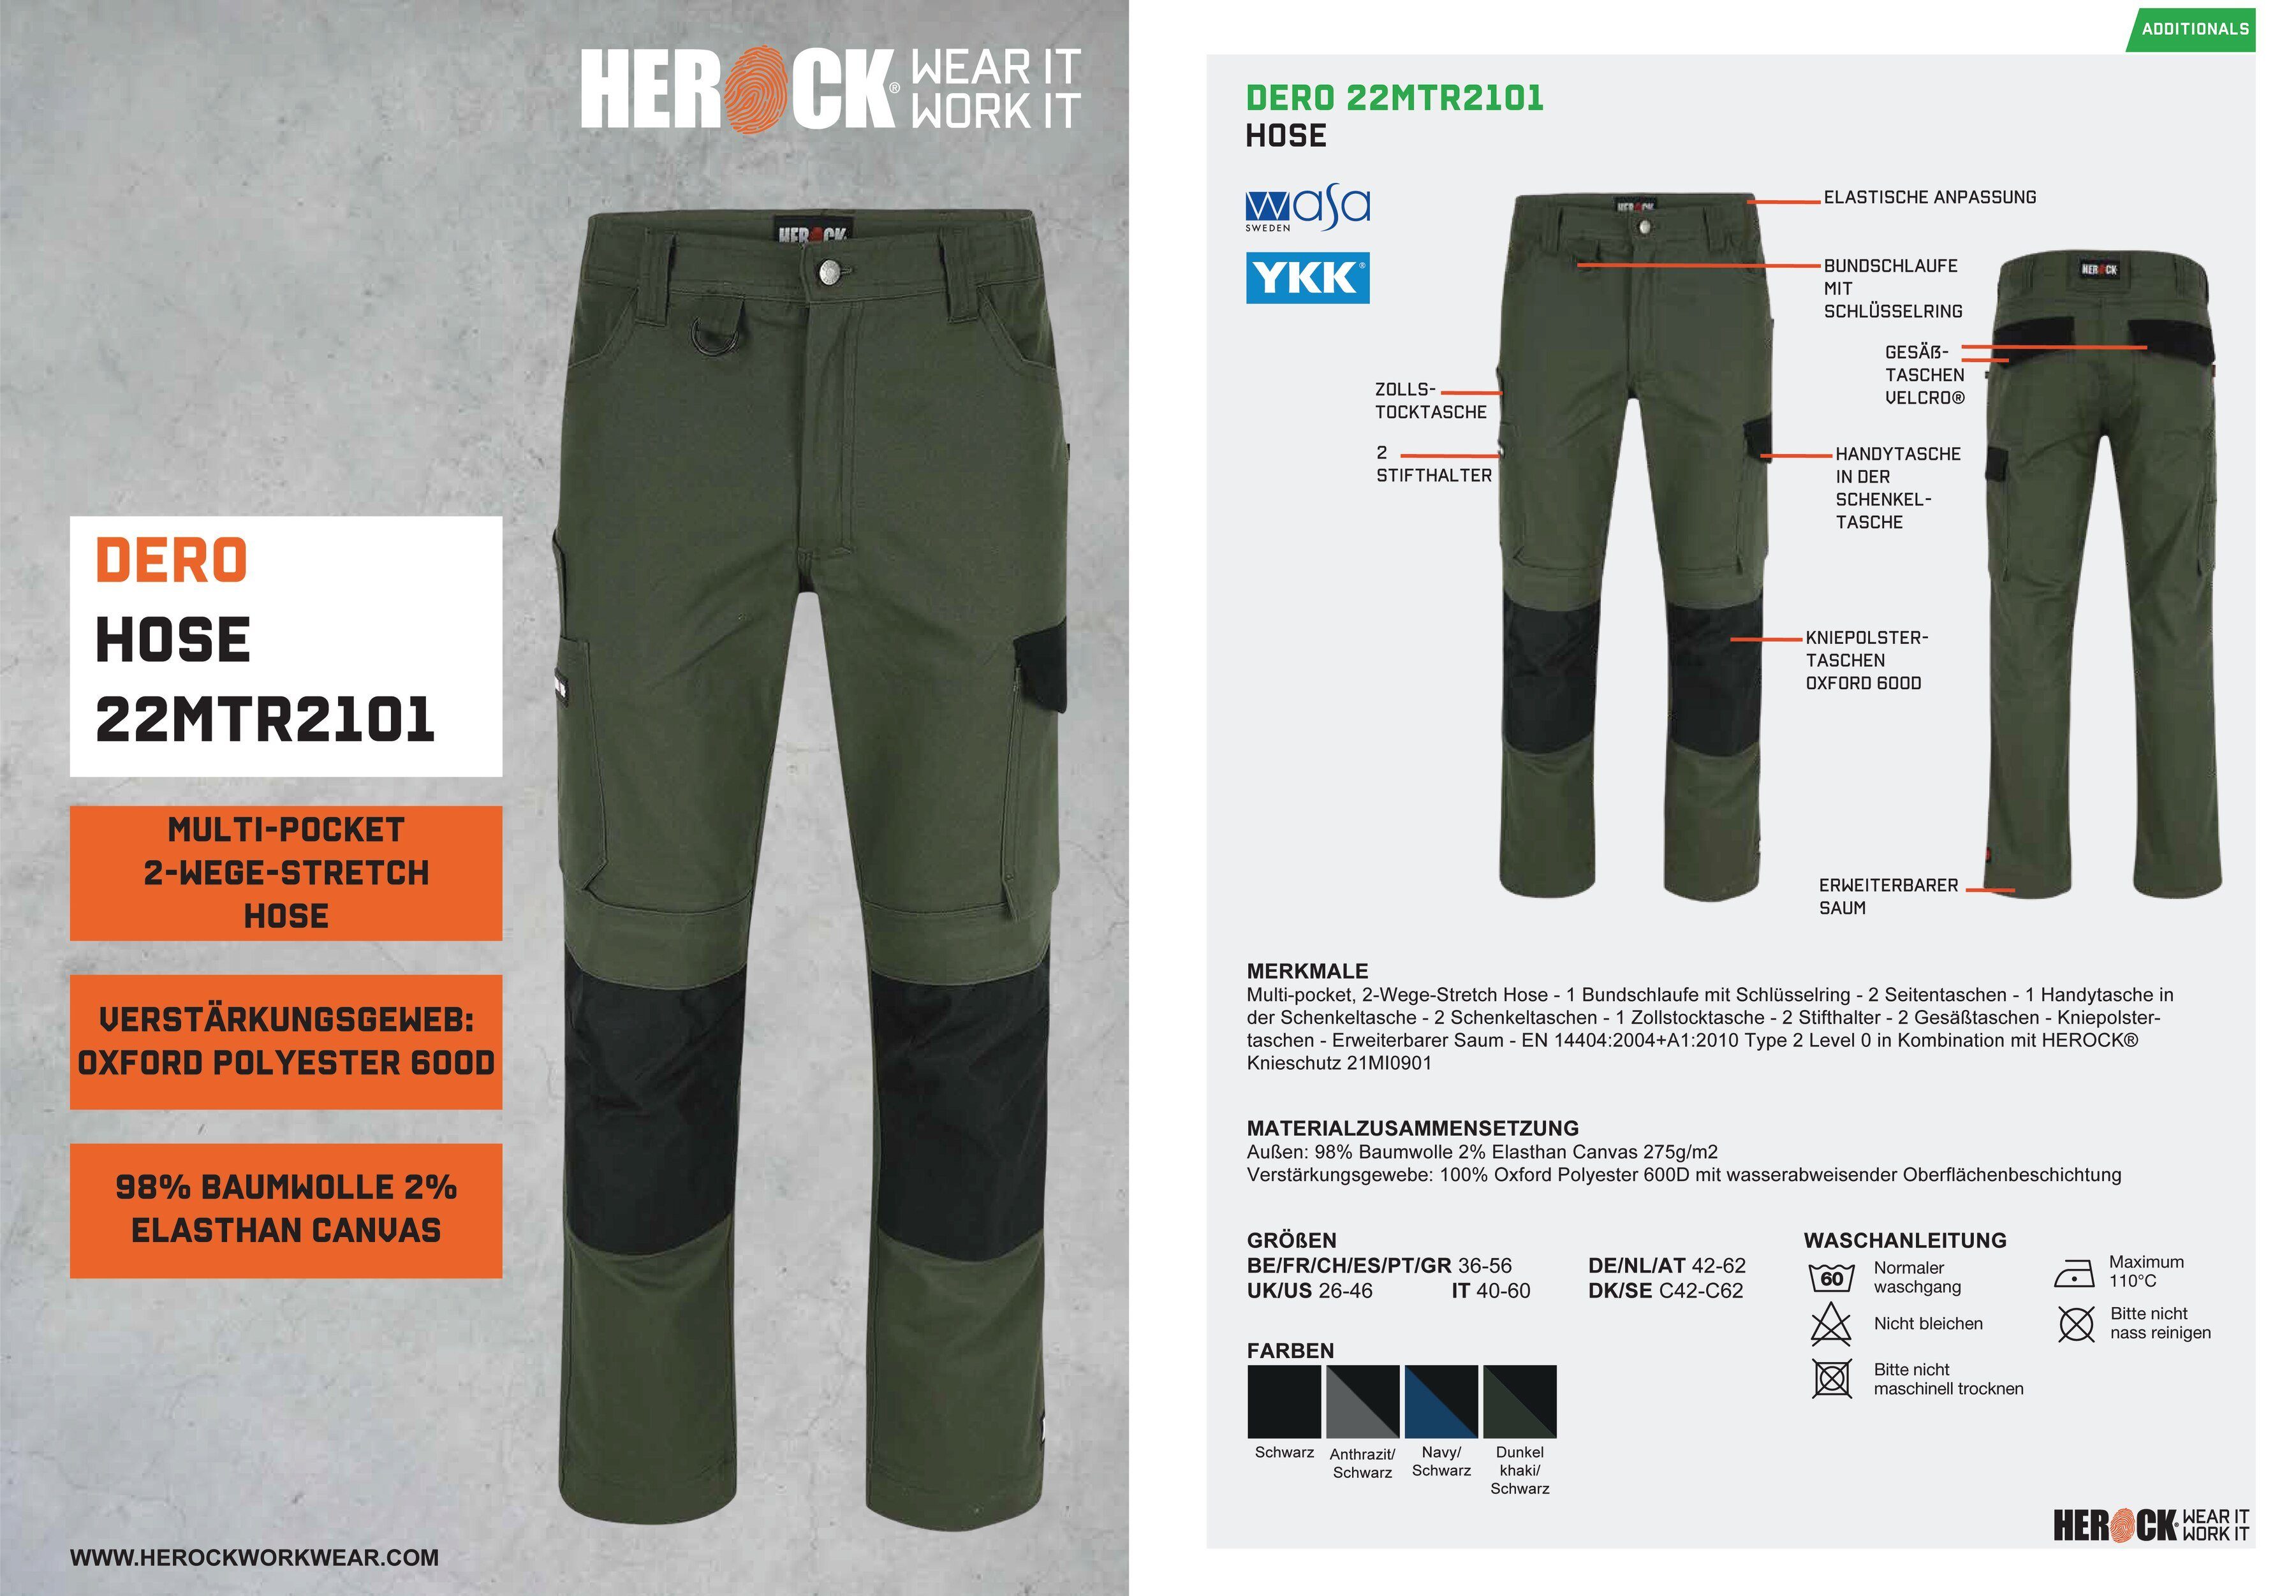 Herock Arbeitshose DERO 2-Wege-Stretch, Multi-Pocket, Passform, khaki wasserabweisend Fit Slim